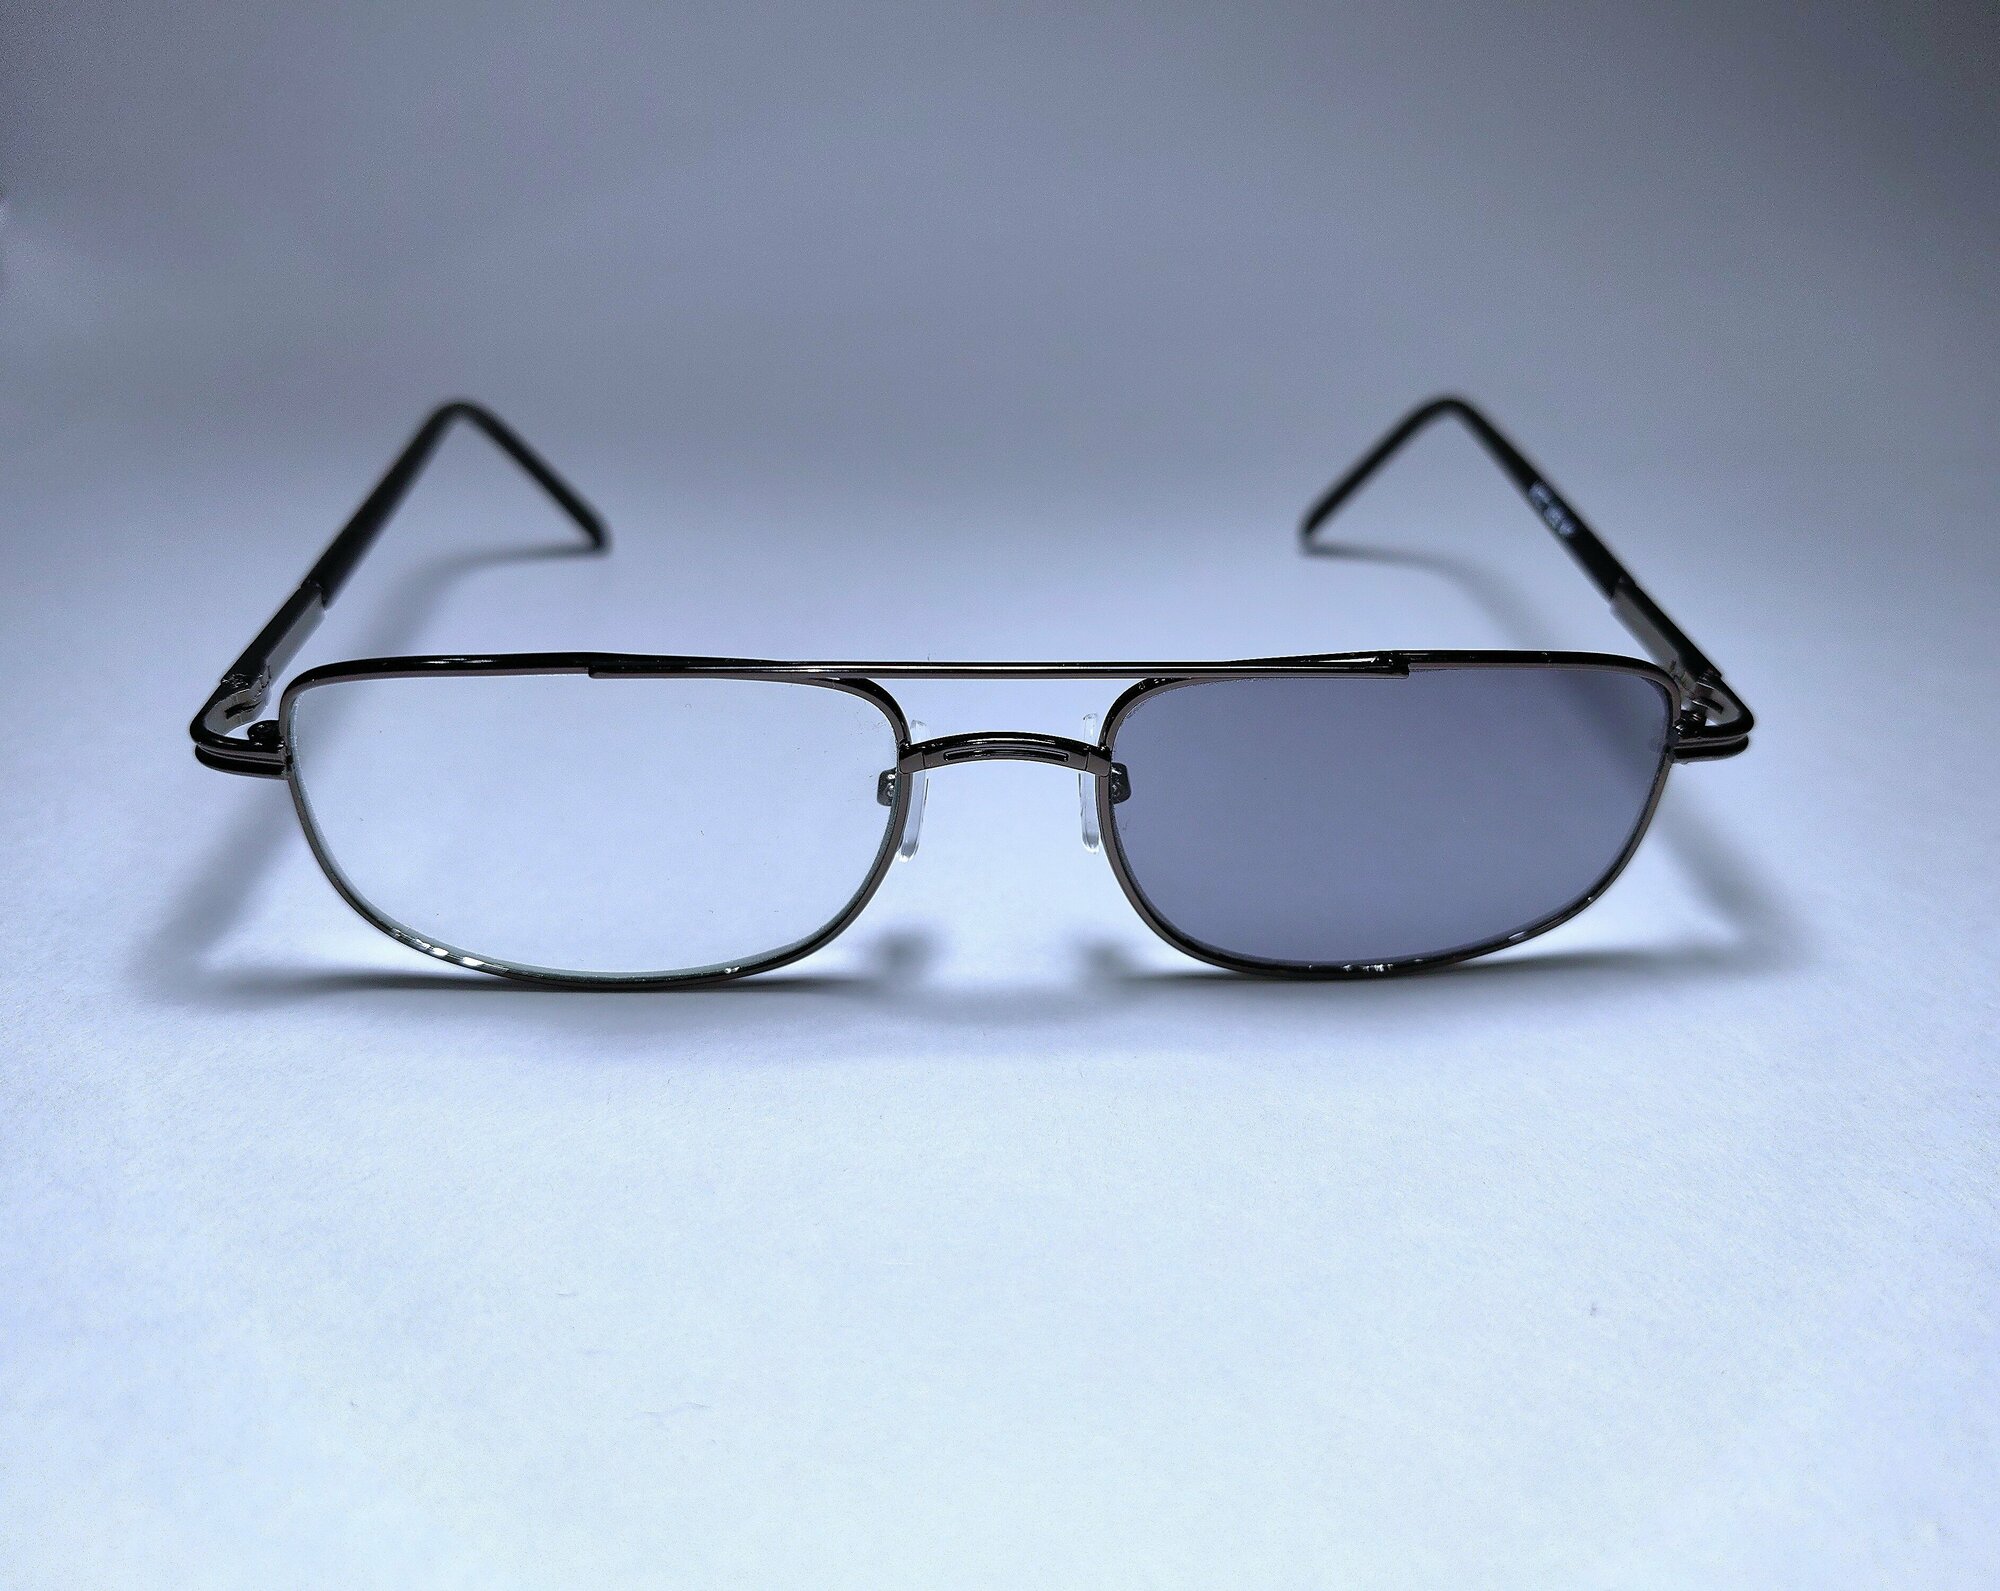 Готовые очки для зрения, стекло +2,00 (хамелеон) с фотохромными линзами, 62-64мм, очки для чтения, очки с диоптриями женские, мужские, оптика